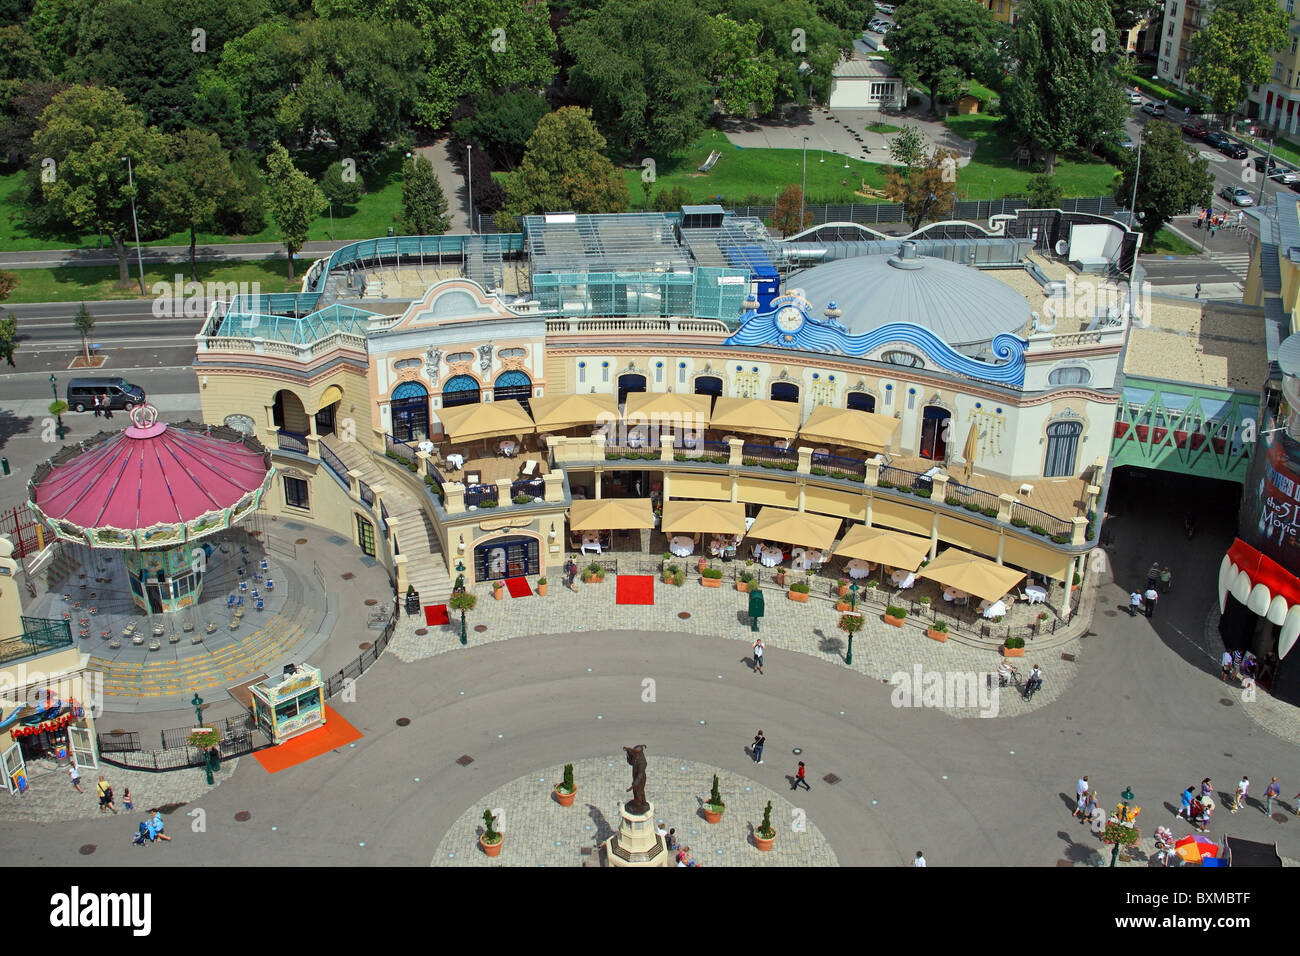 View from the Prater ferris wheel, Wurstelprater amusement park, Wiener Prater park, Vienna, Austria Stock Photo